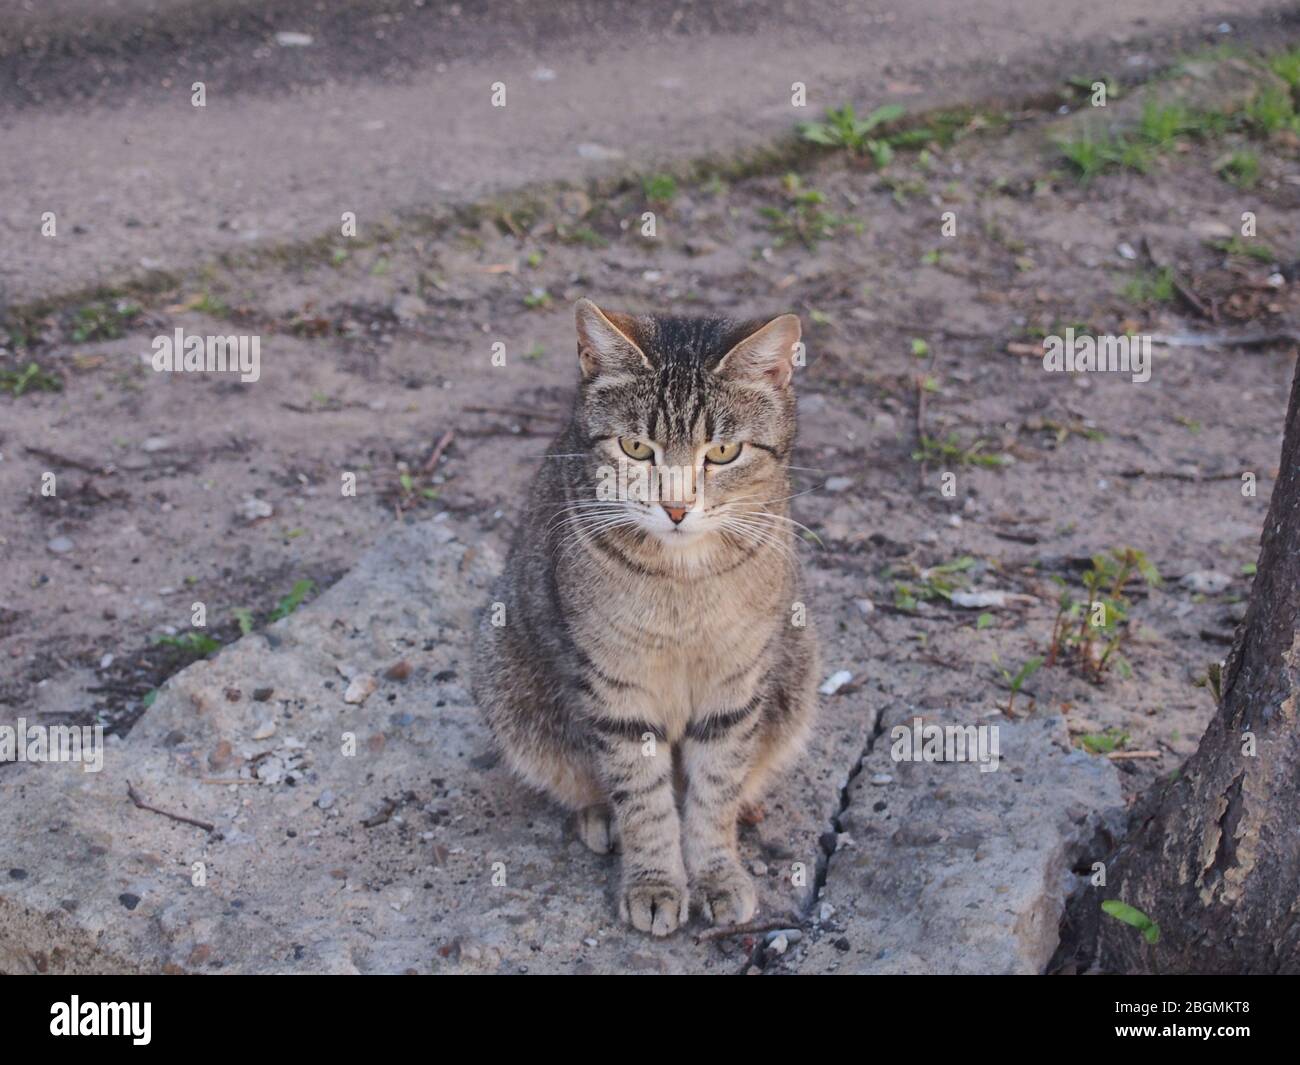 Un chat tabby gris est assis sur le sol. Gros plan. Banque D'Images